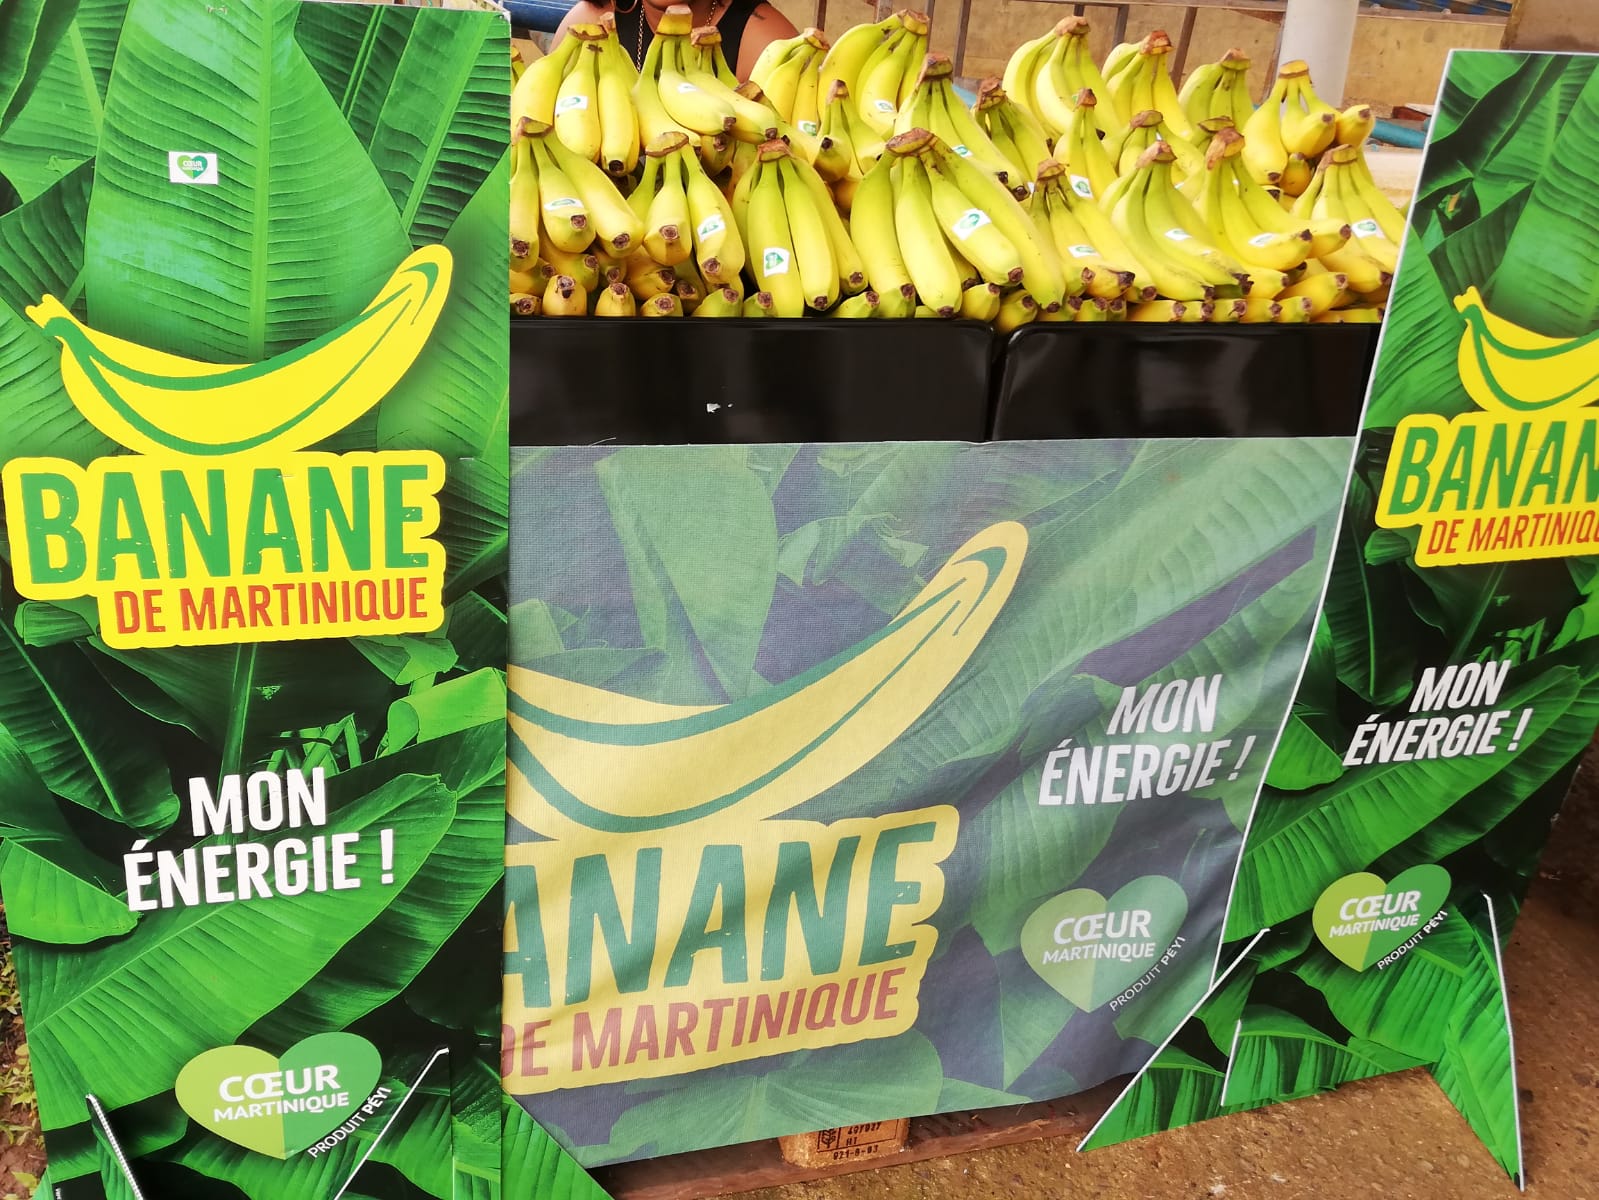     Place à la Banane de Martinique !

